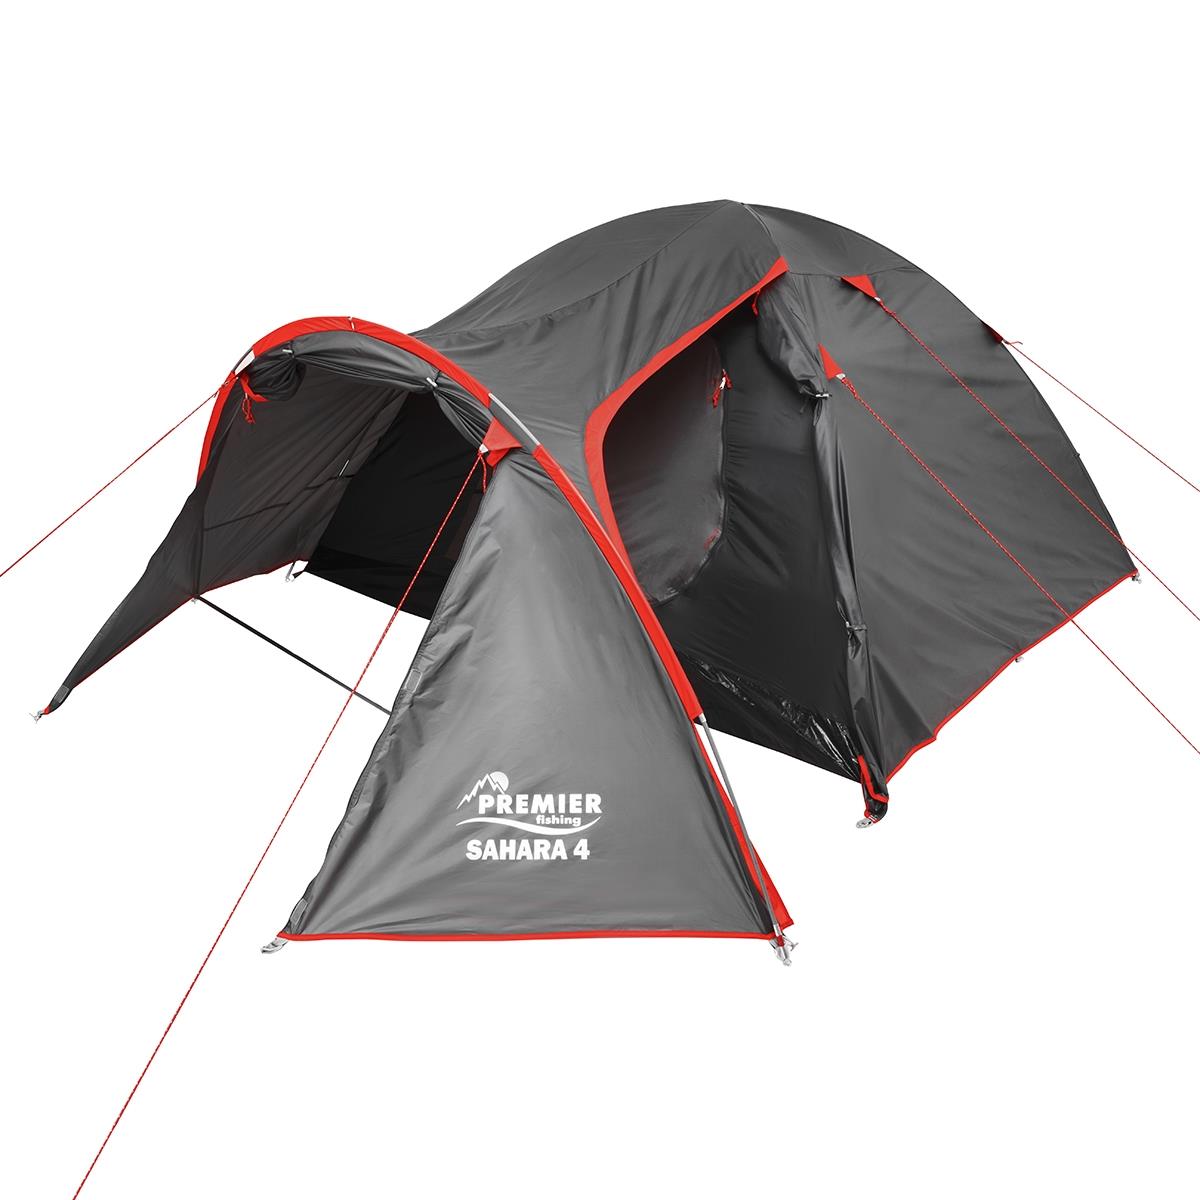 Палатка SAHARA-4 (PR S-4-GR)  Premier Fishing t образные колышки для палатки следопыт